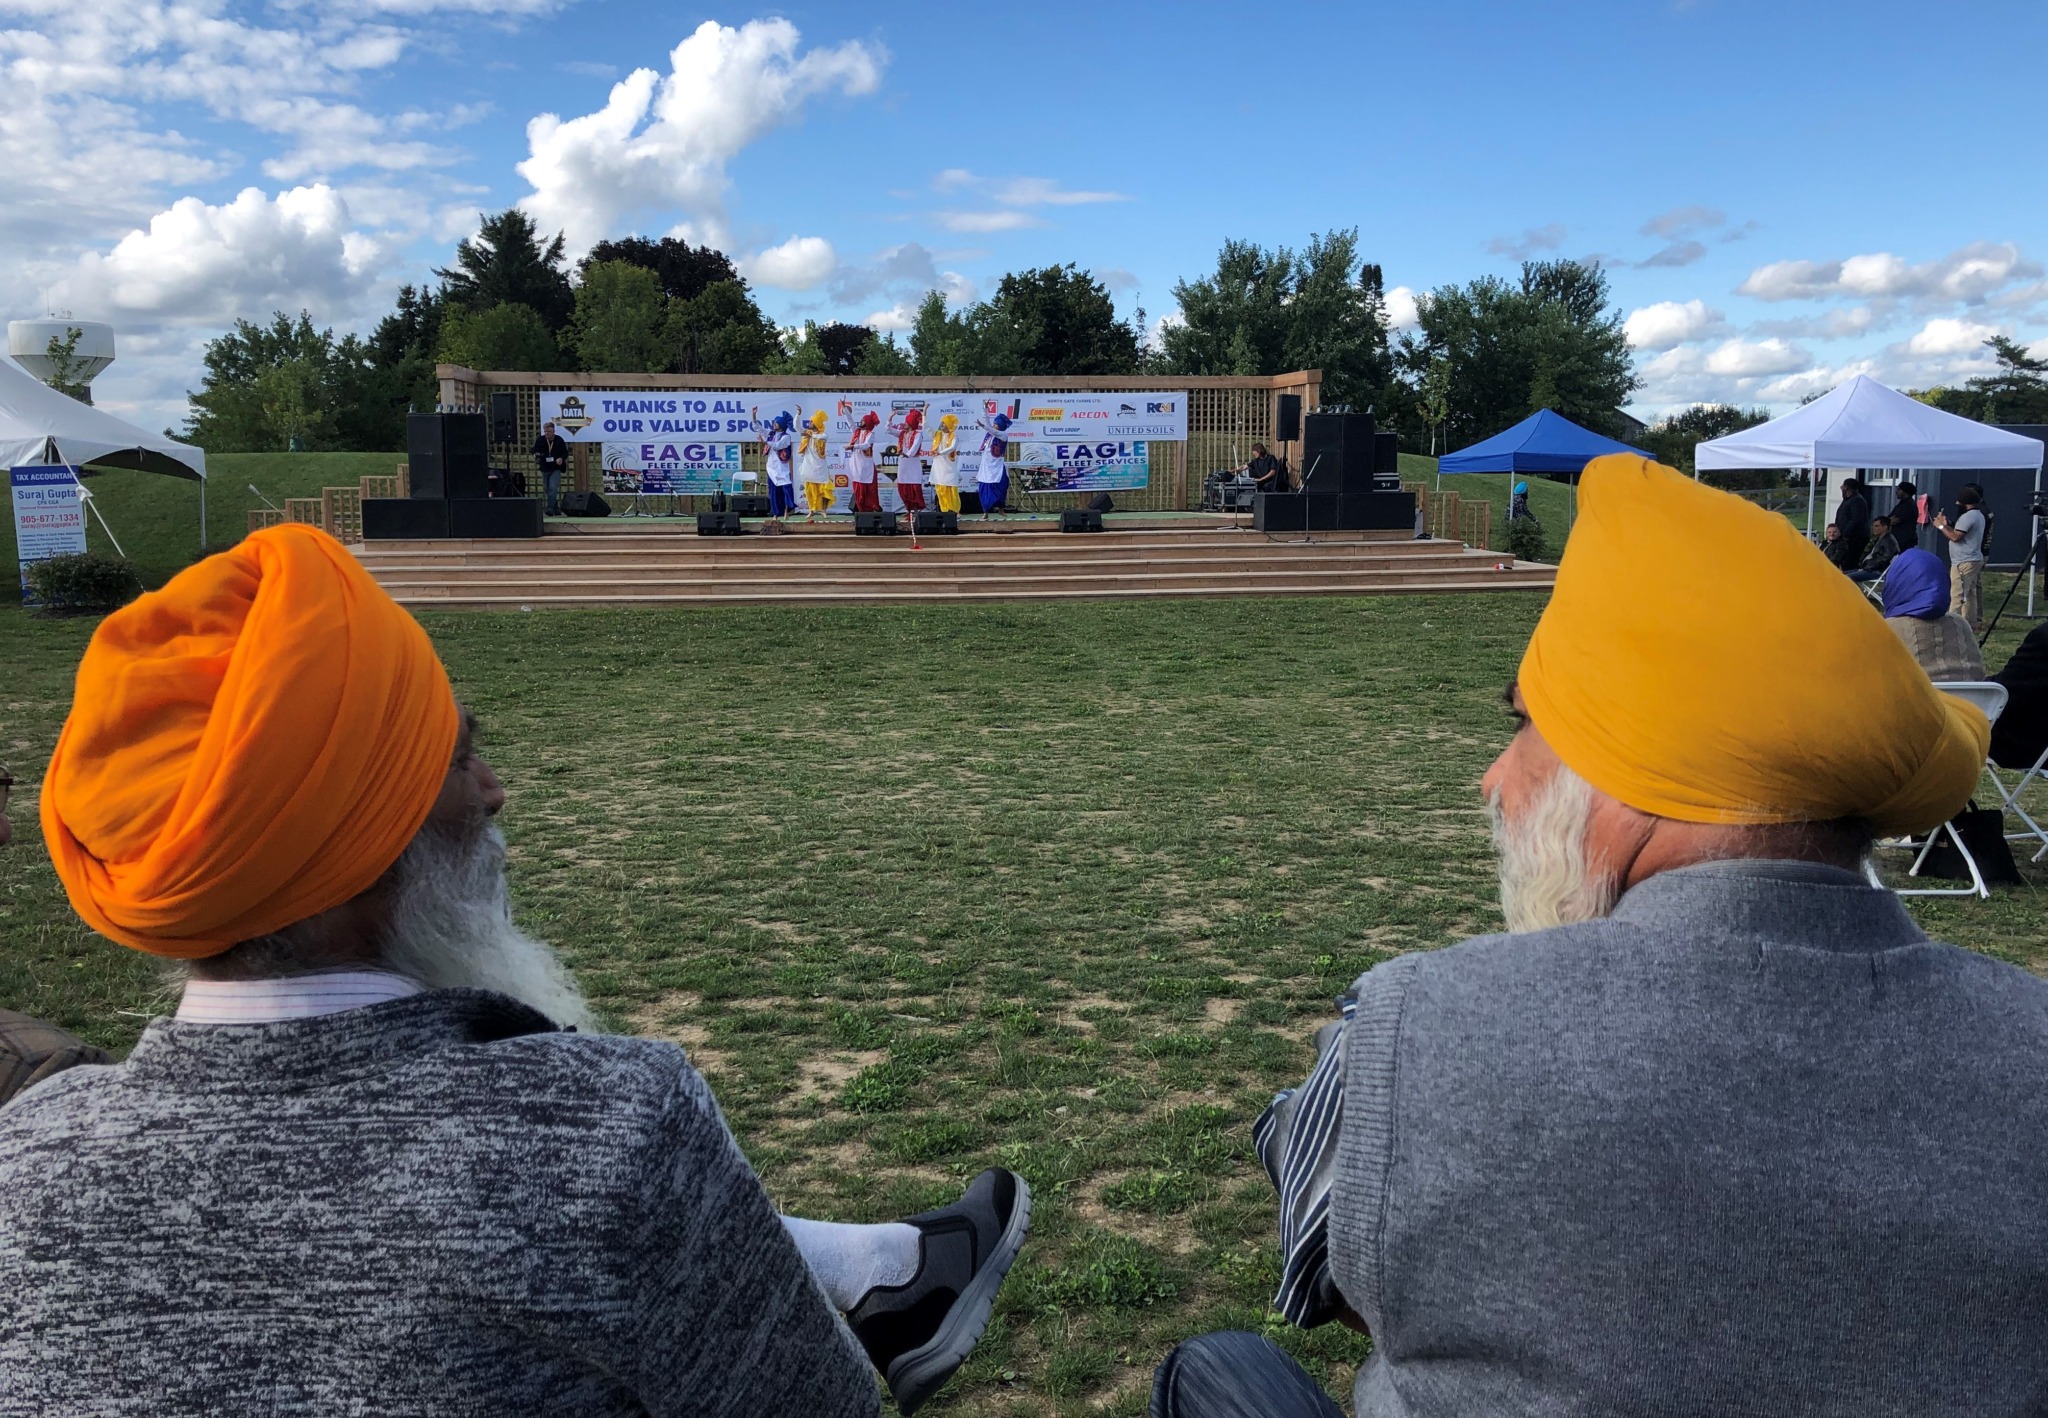 Sikh Festival